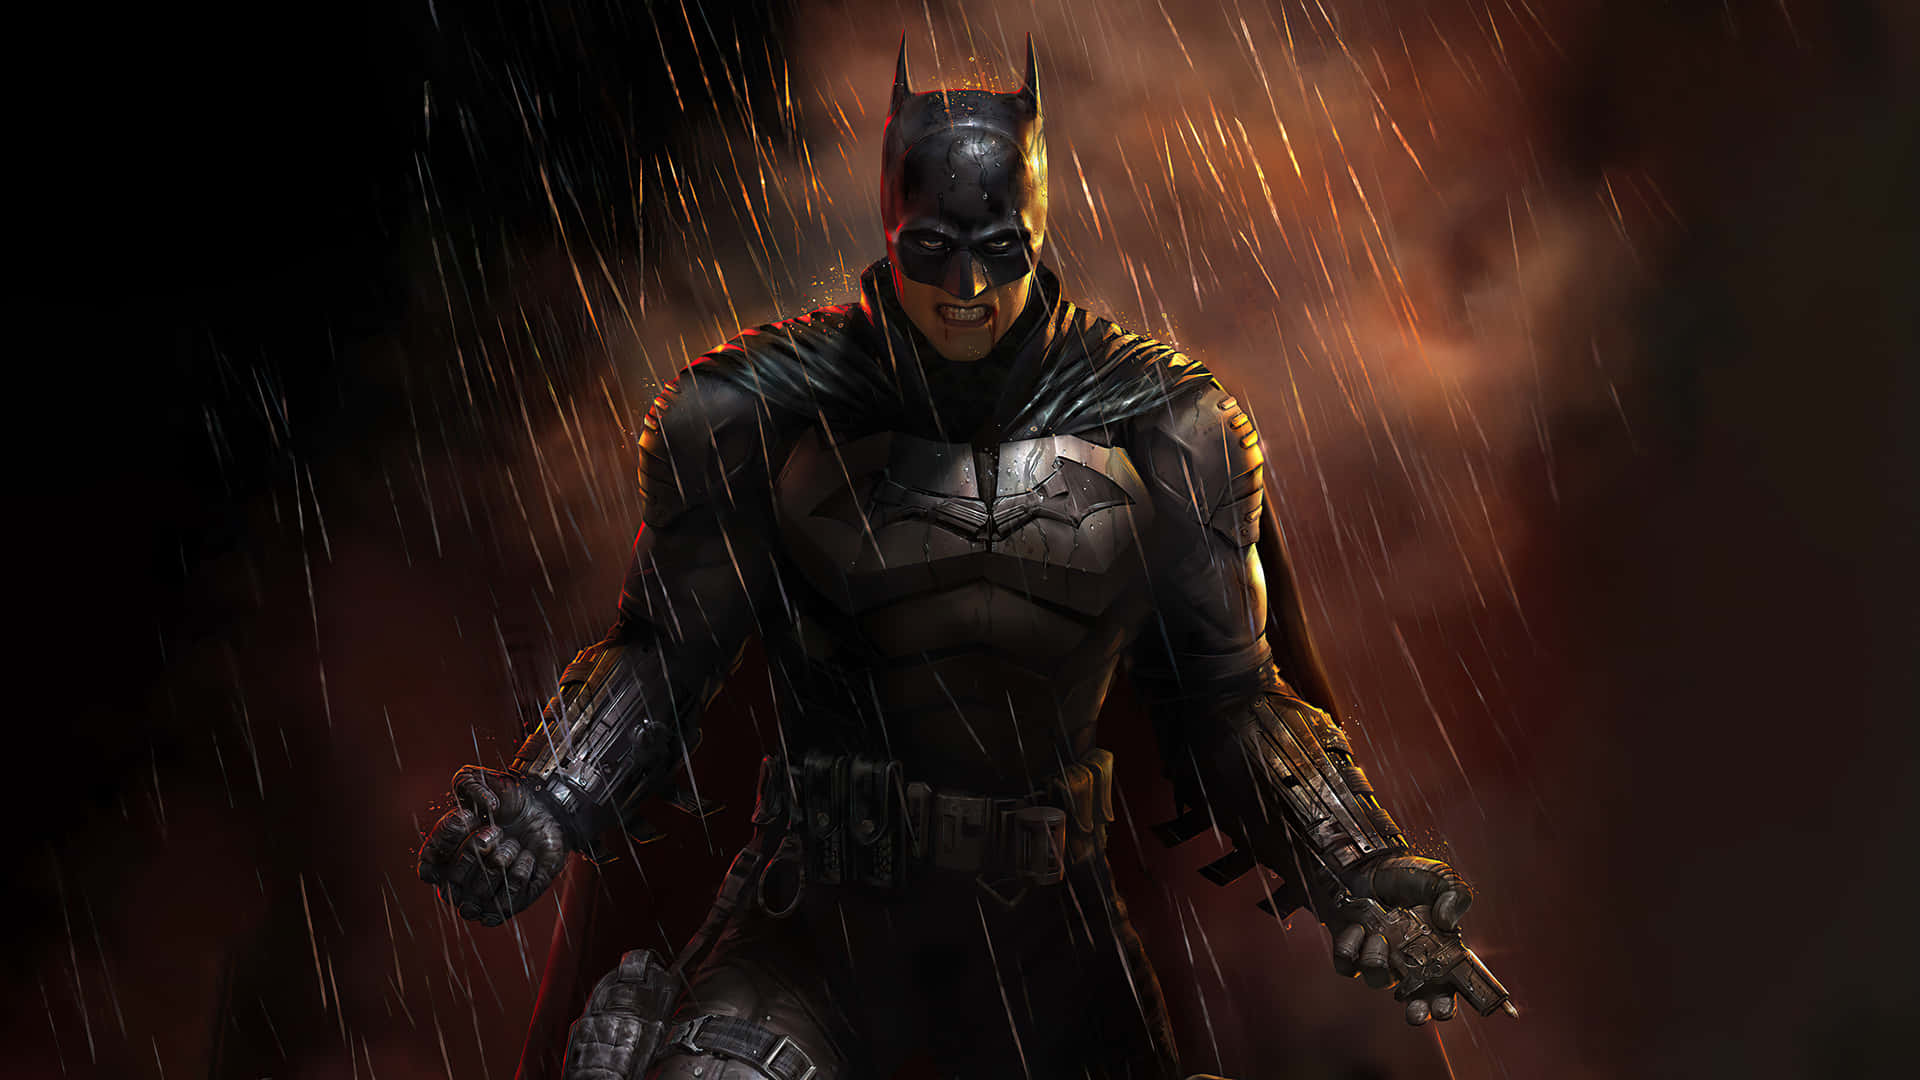 Dark Knight Rainy Vigilance.jpg Wallpaper